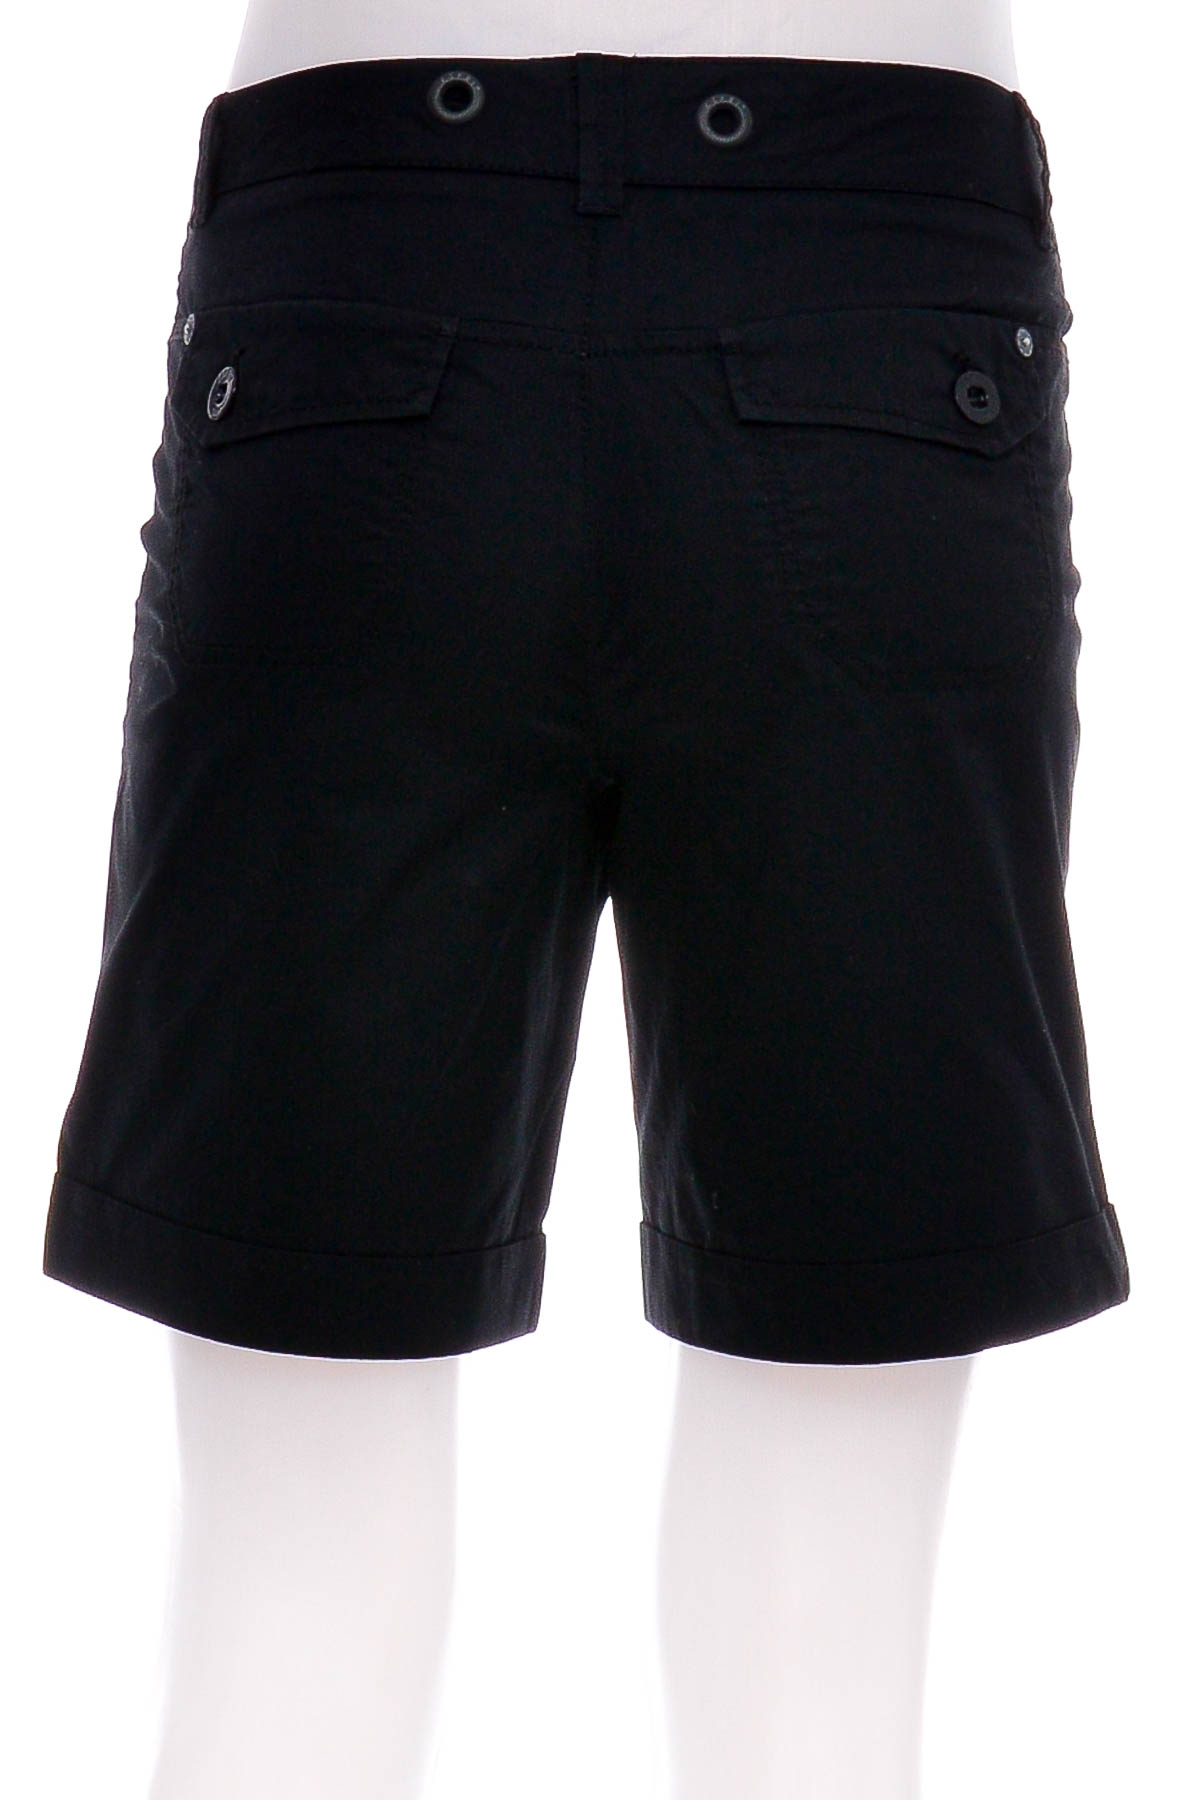 Female shorts - ESPRIT - 1